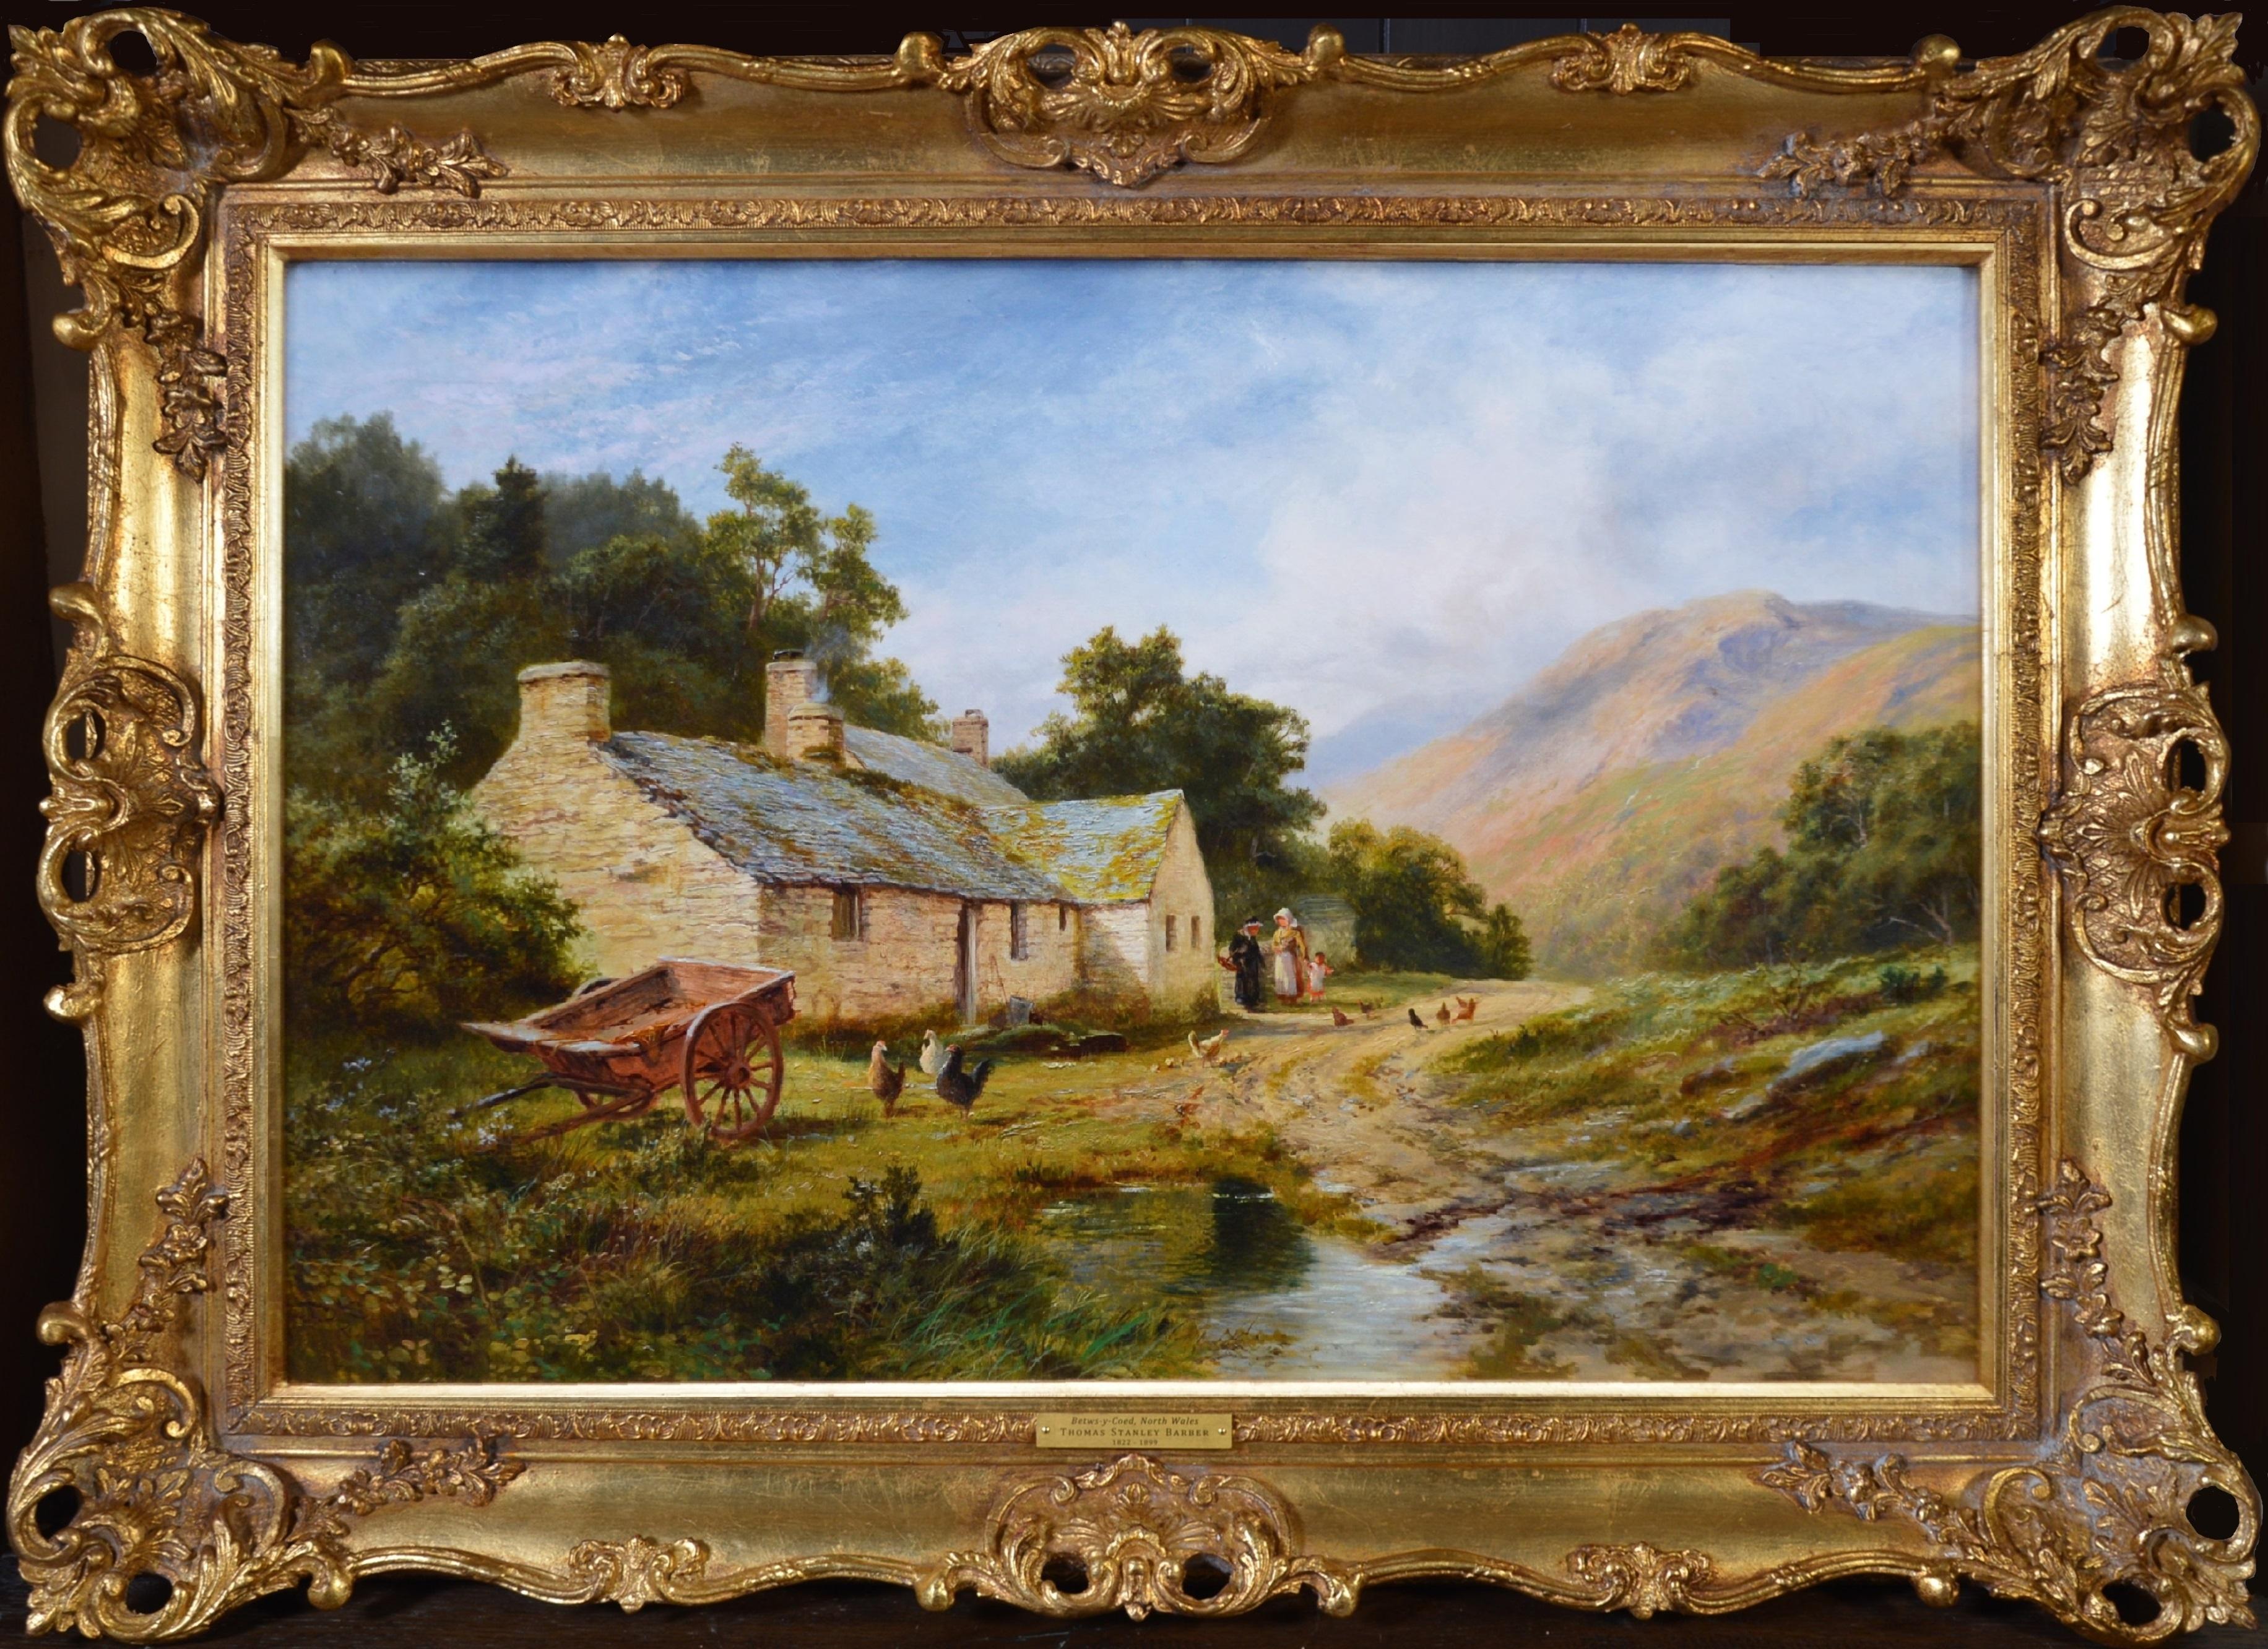 Landscape Painting Robert Gallon - Dans la vallée de Lledr - Grande peinture à l'huile d'un paysage d'été du 19e siècle - Snowdonia